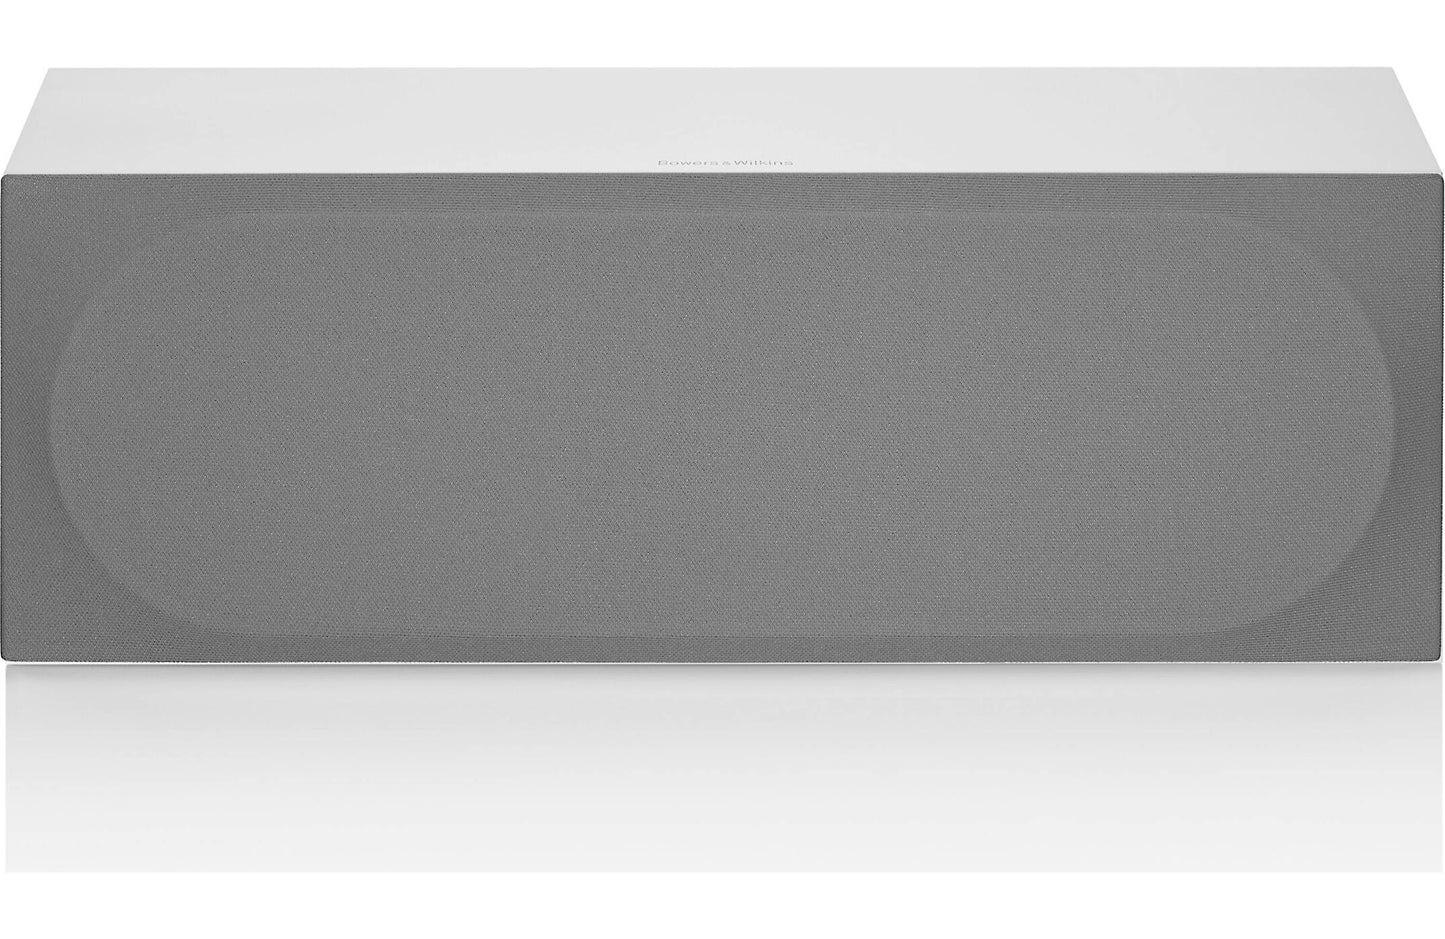 Bowers & Wilkins HTM72 S3 Center channel speaker - each - Gloss White